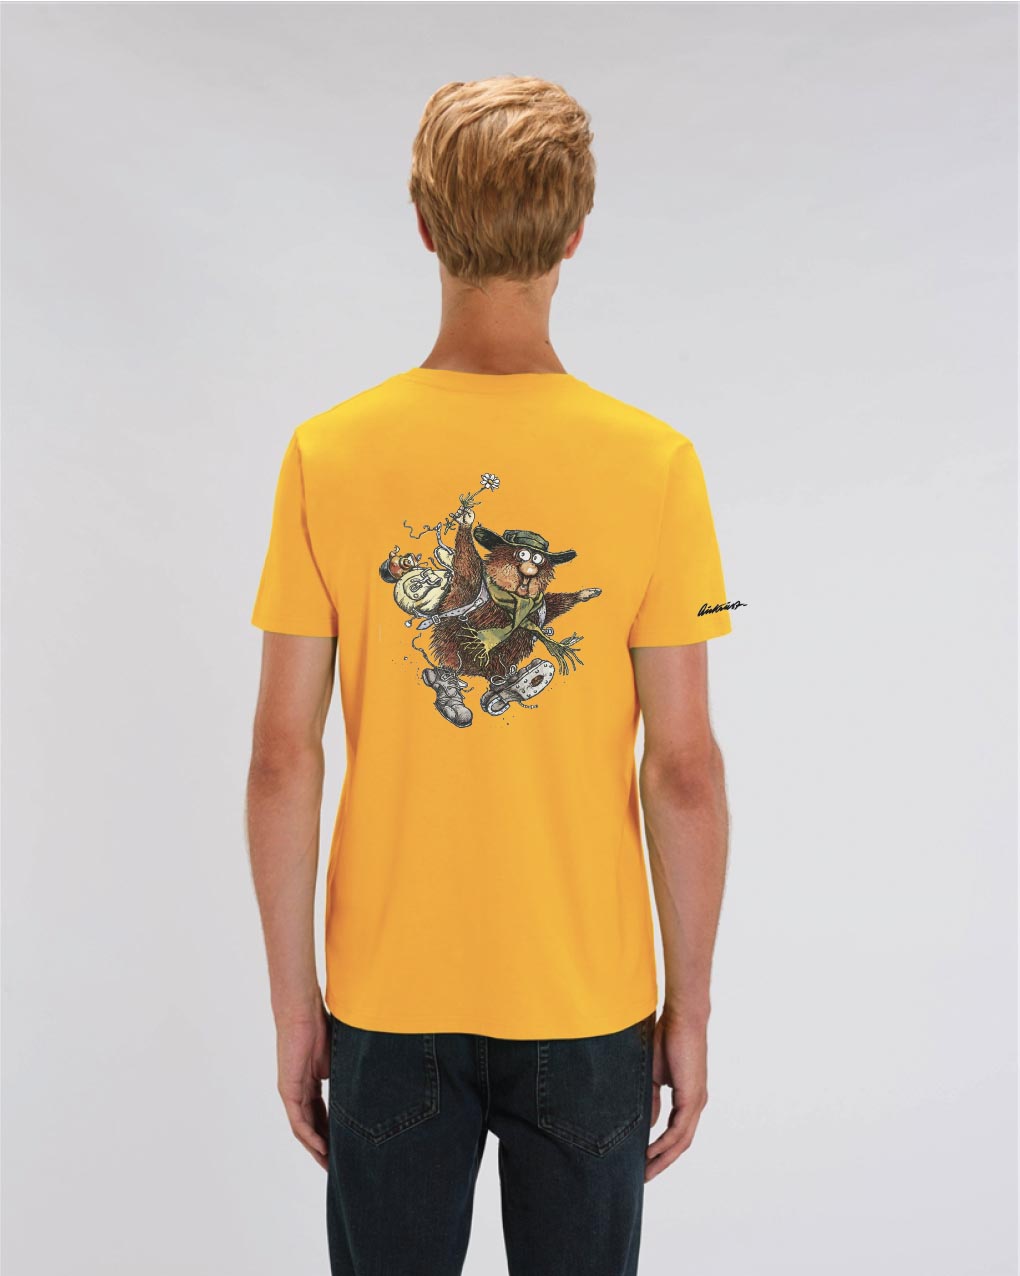 Ludvig med prestekrage - Spectra yellow, t-skjorte